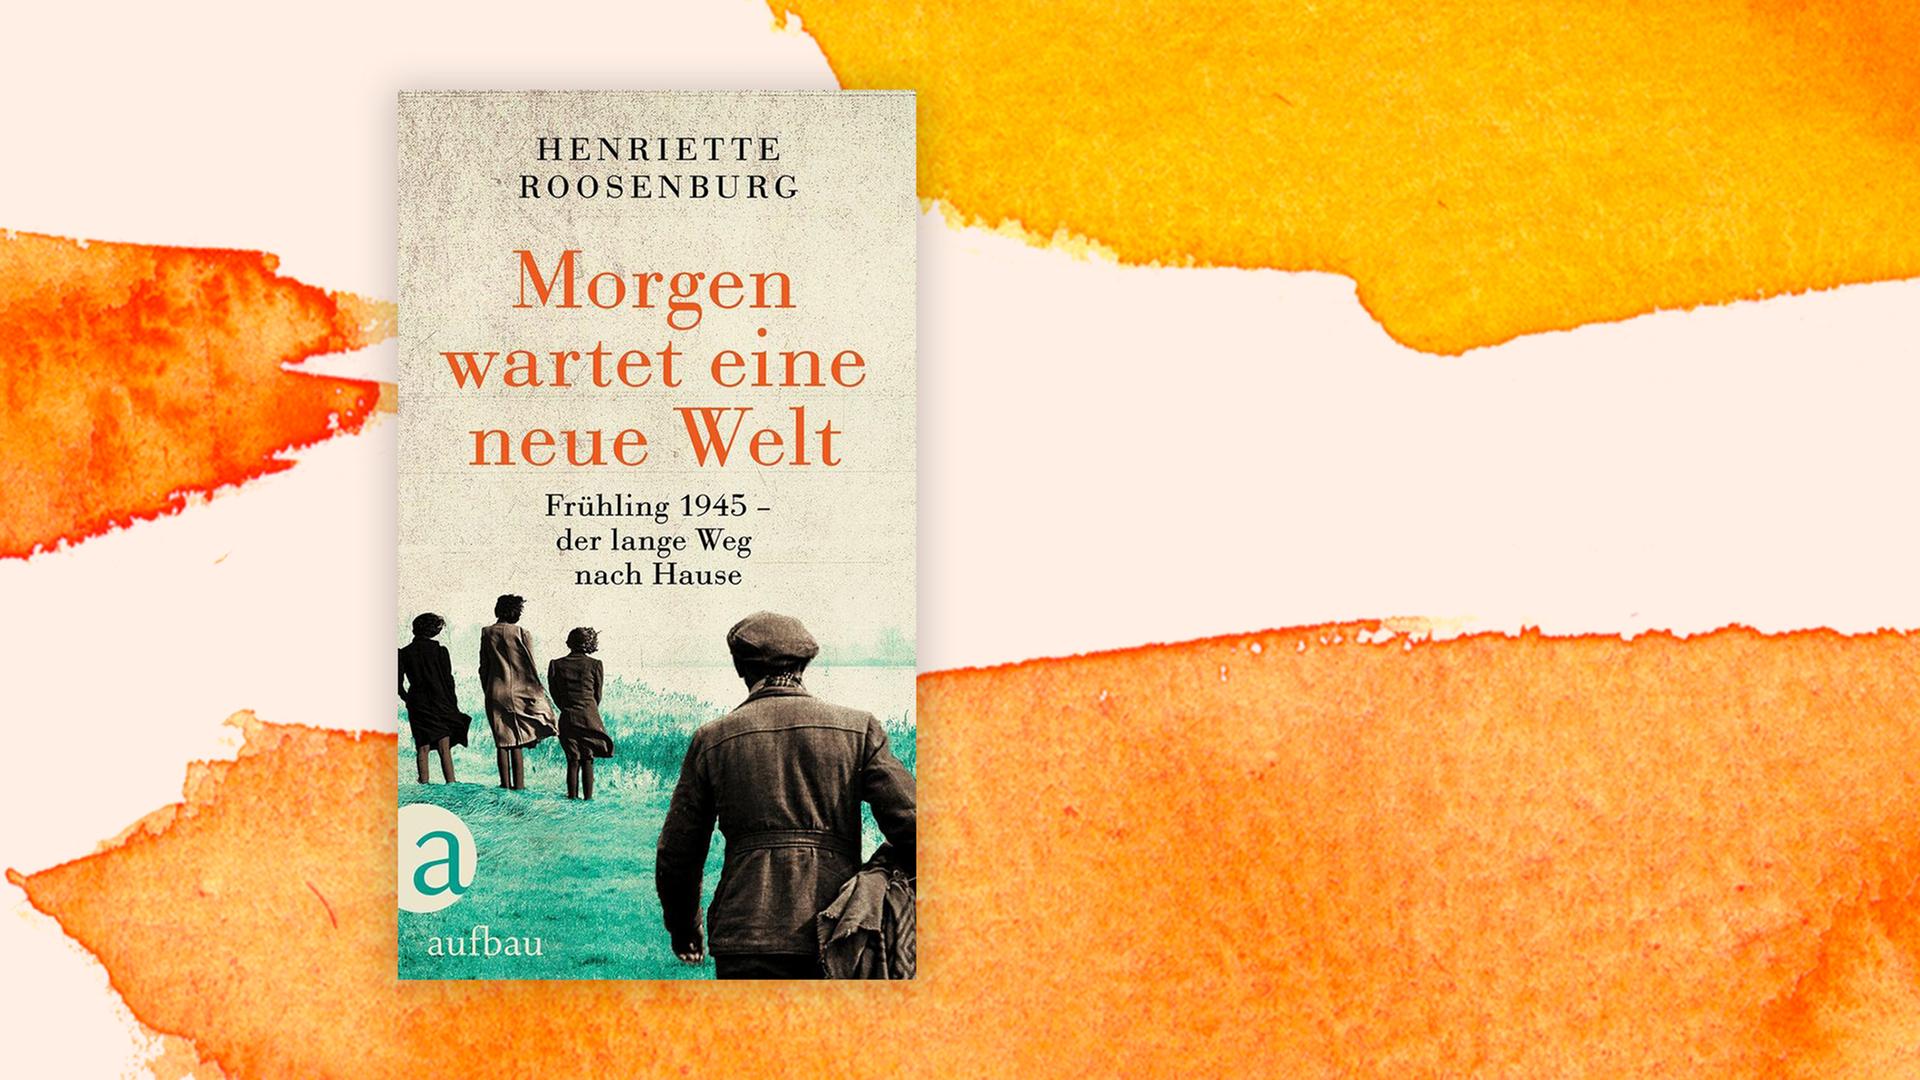 Buchcover zu Henriette Roosenburg: "Morgen wartet eine neue Welt"